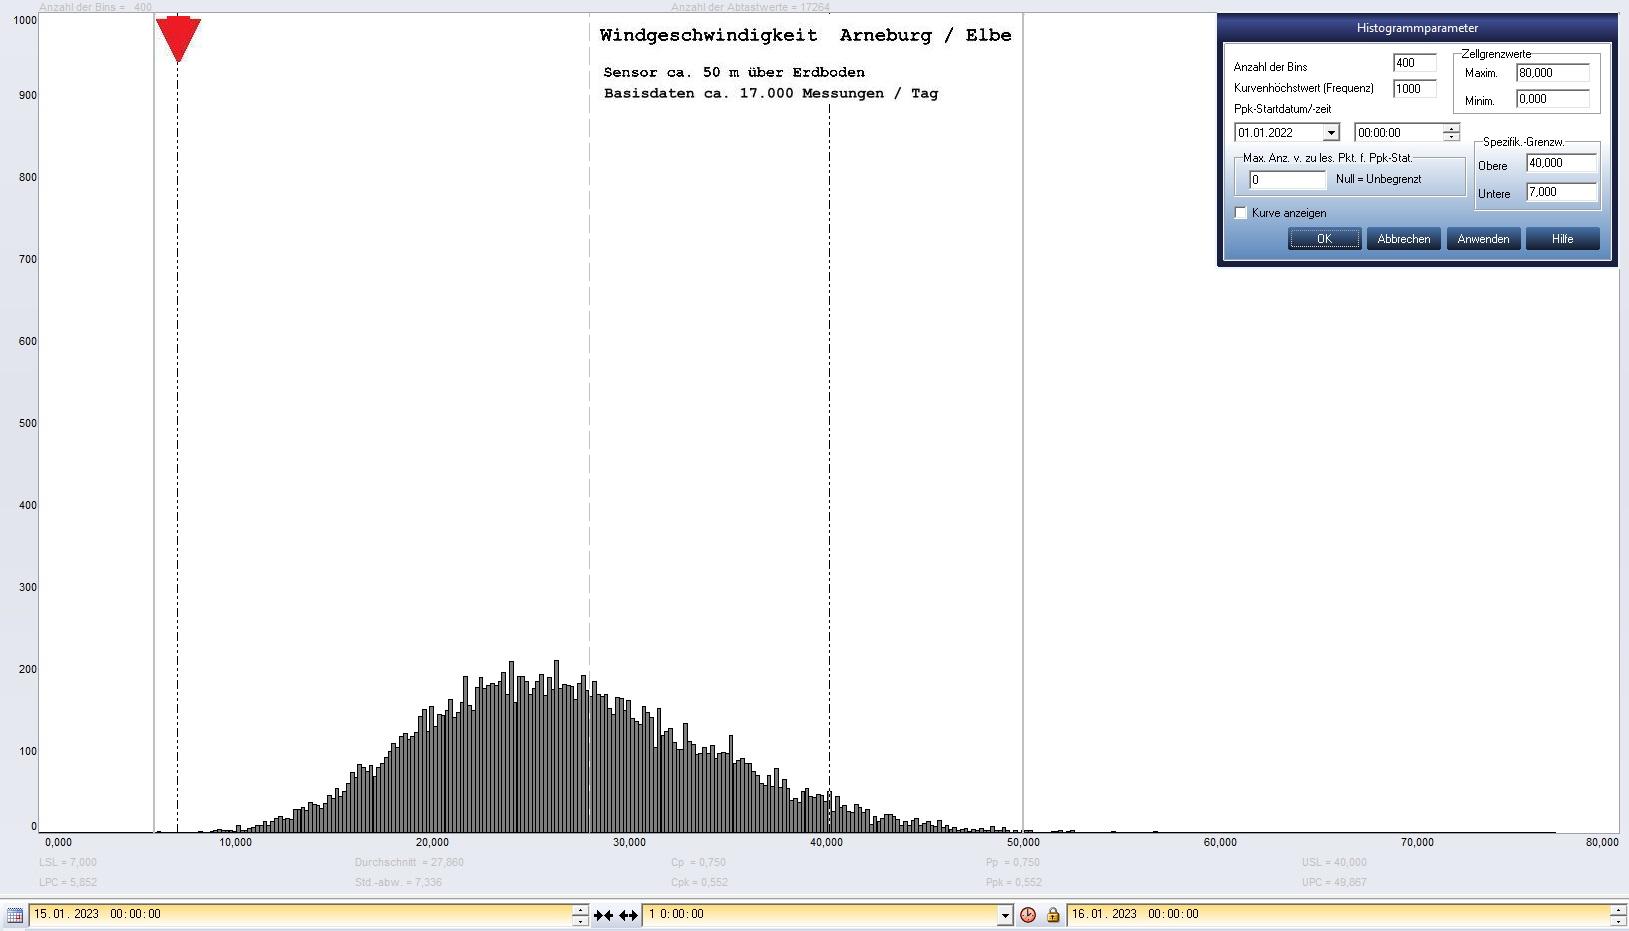 Arneburg Tages-Histogramm Winddaten, 15.01.2023
  Histogramm, Sensor auf Gebude, ca. 50 m ber Erdboden, Basis: 5s-Aufzeichnung